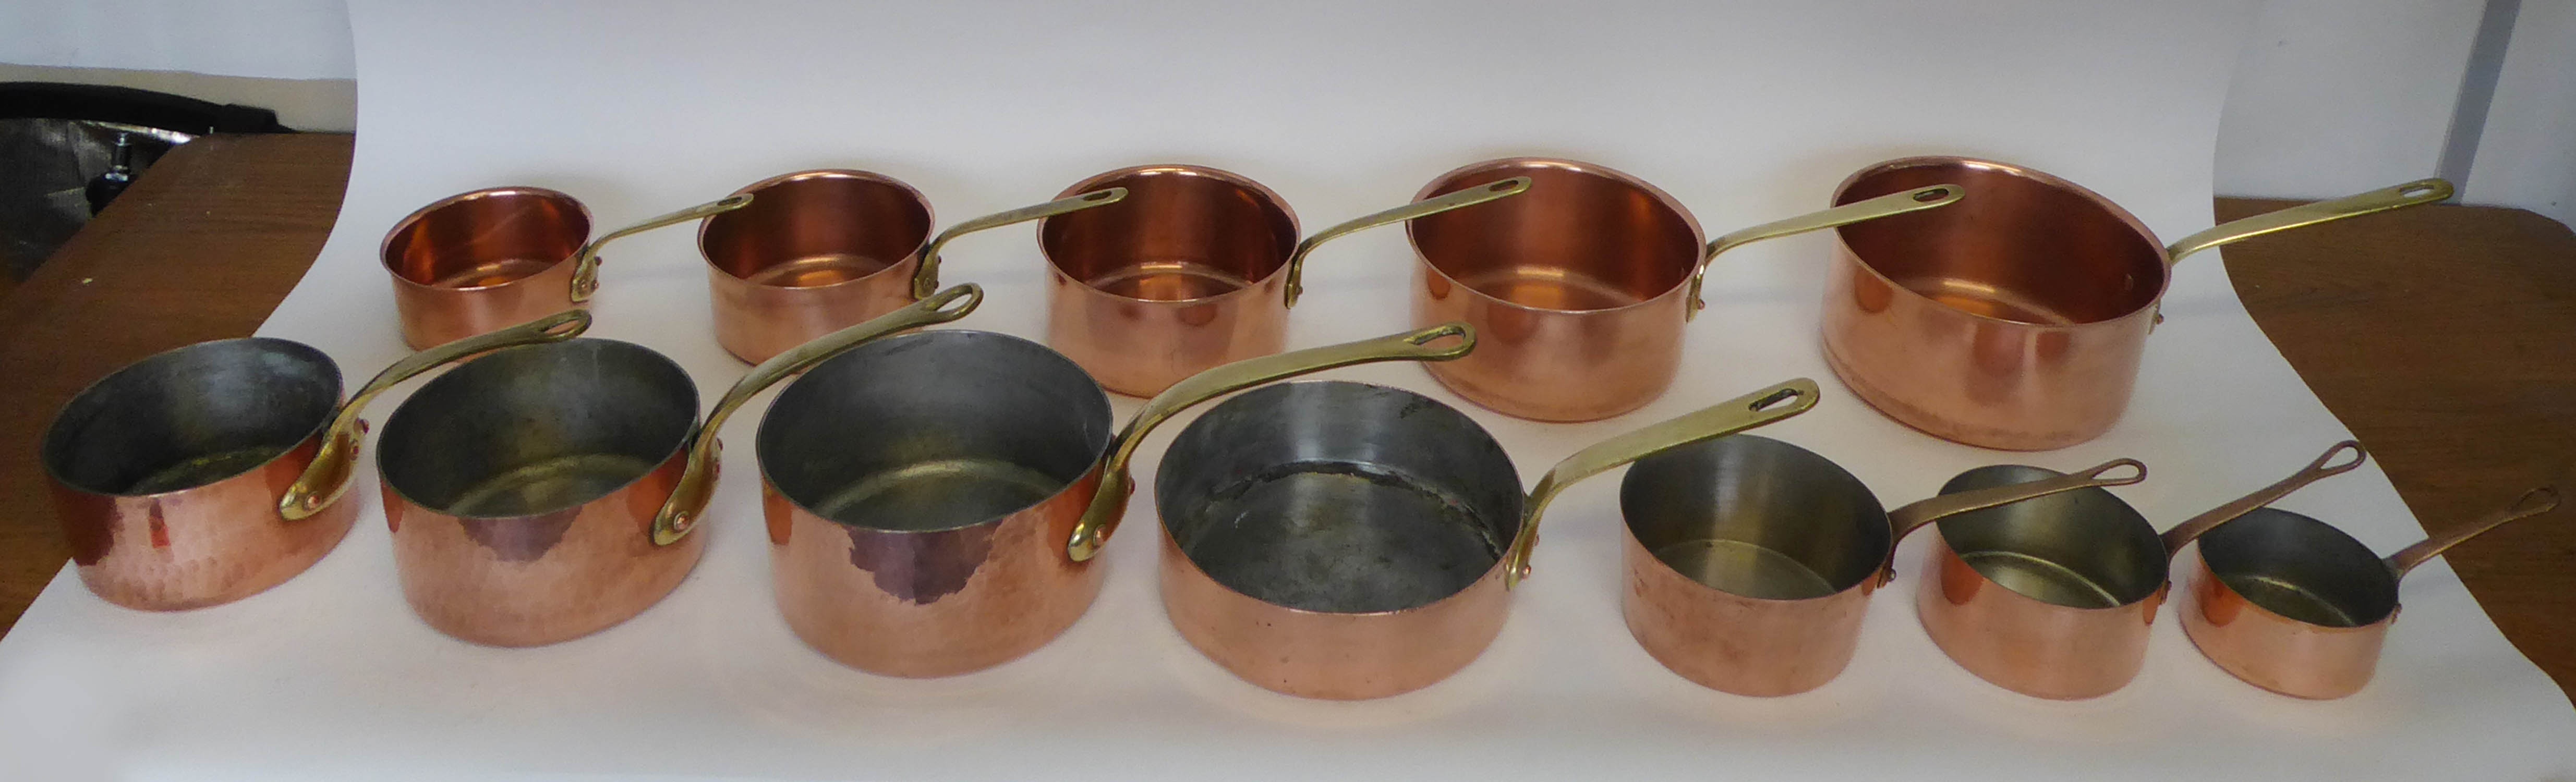 BATTERIE DE CUISINE, a set of five graduated copper pans, each with a brass handle, the largest 21cm